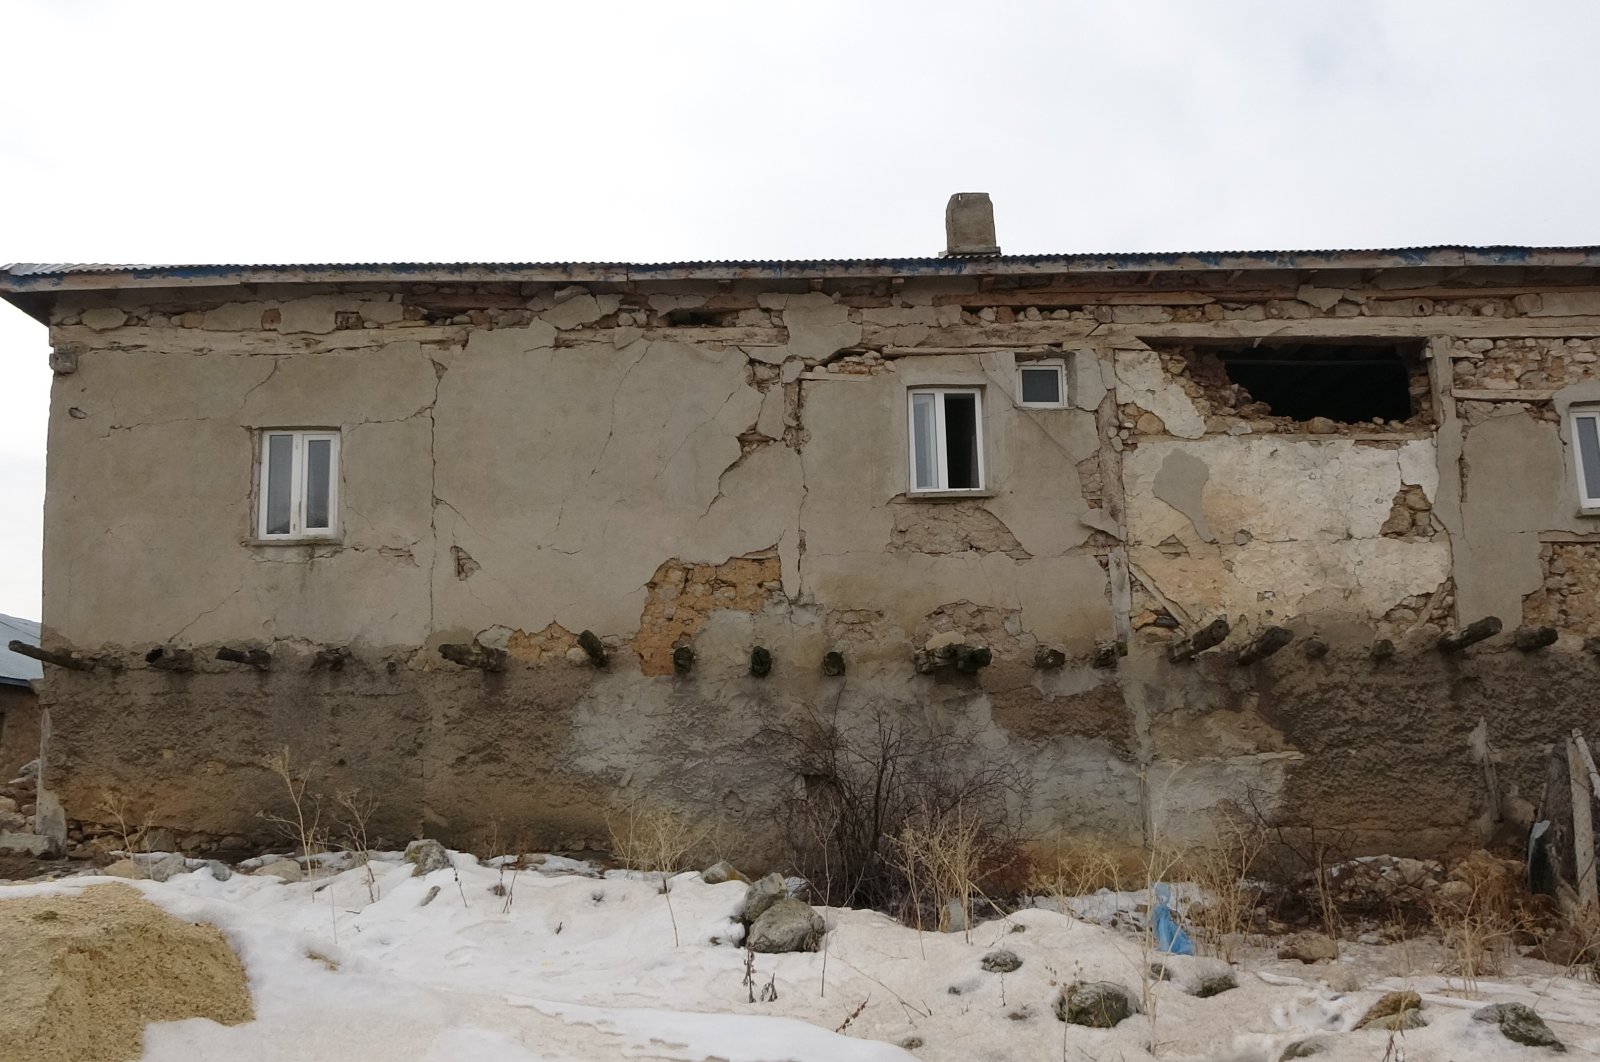 A house damaged by the Feb. 6 earthquakes in the Sarız district of Kayseri, Türkiye, Feb. 28, 2023. (IHA Photo)